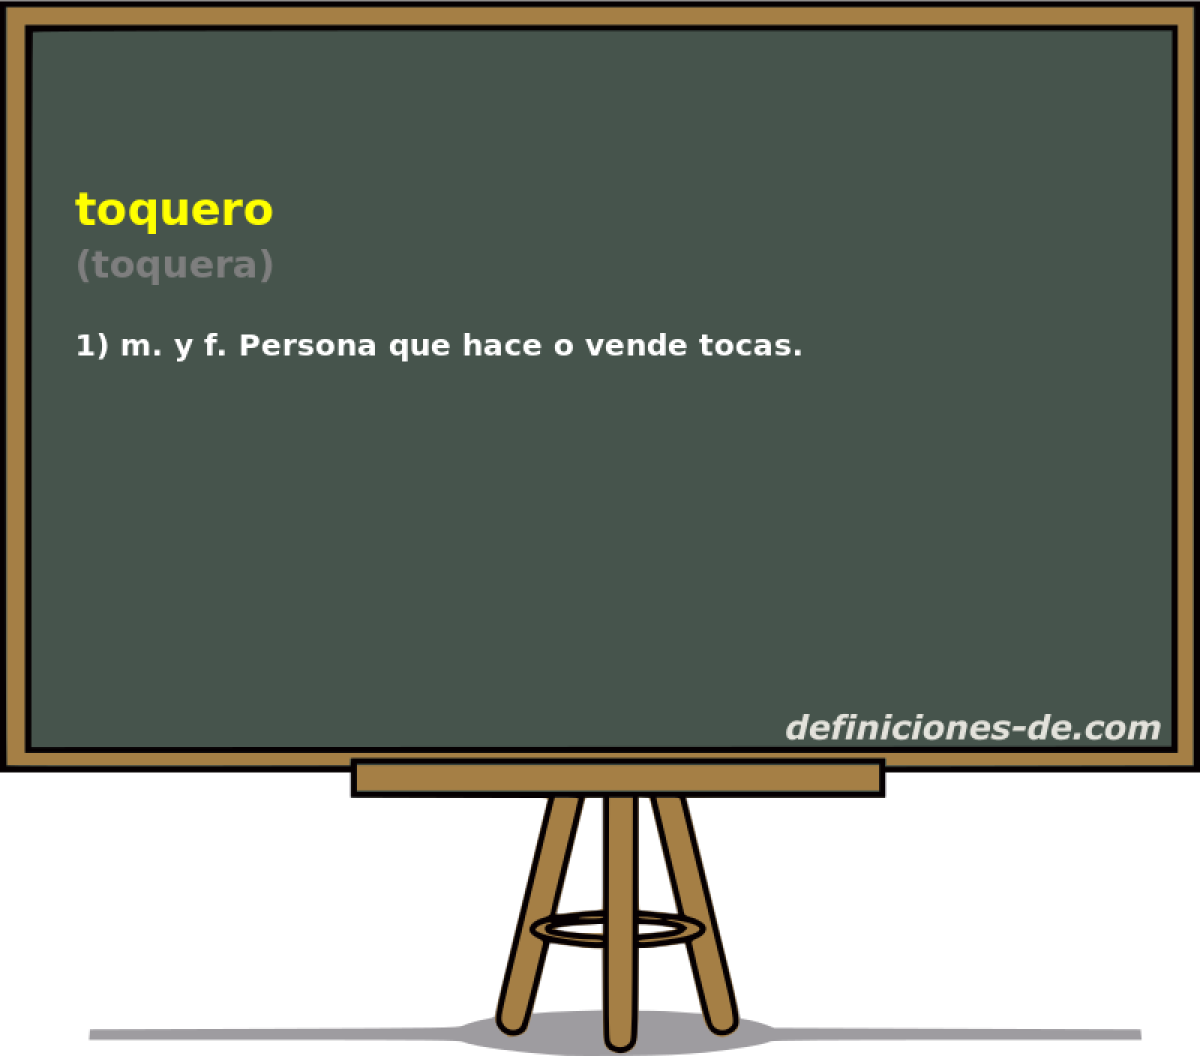 toquero (toquera)